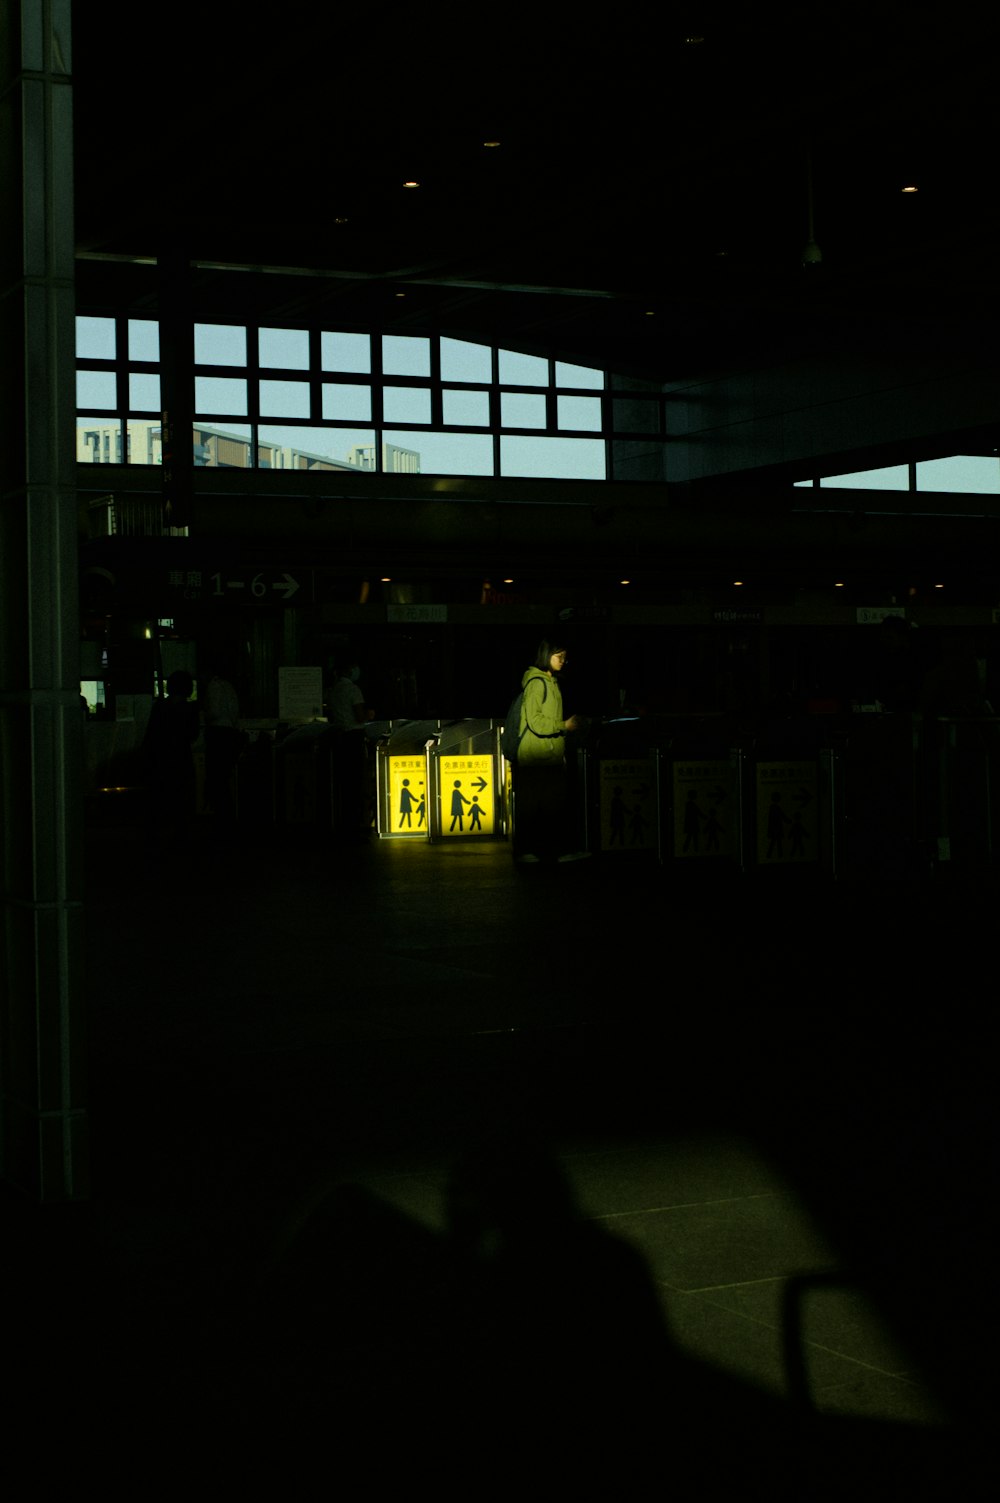 Un hombre de pie junto a una caja amarilla en una habitación oscura